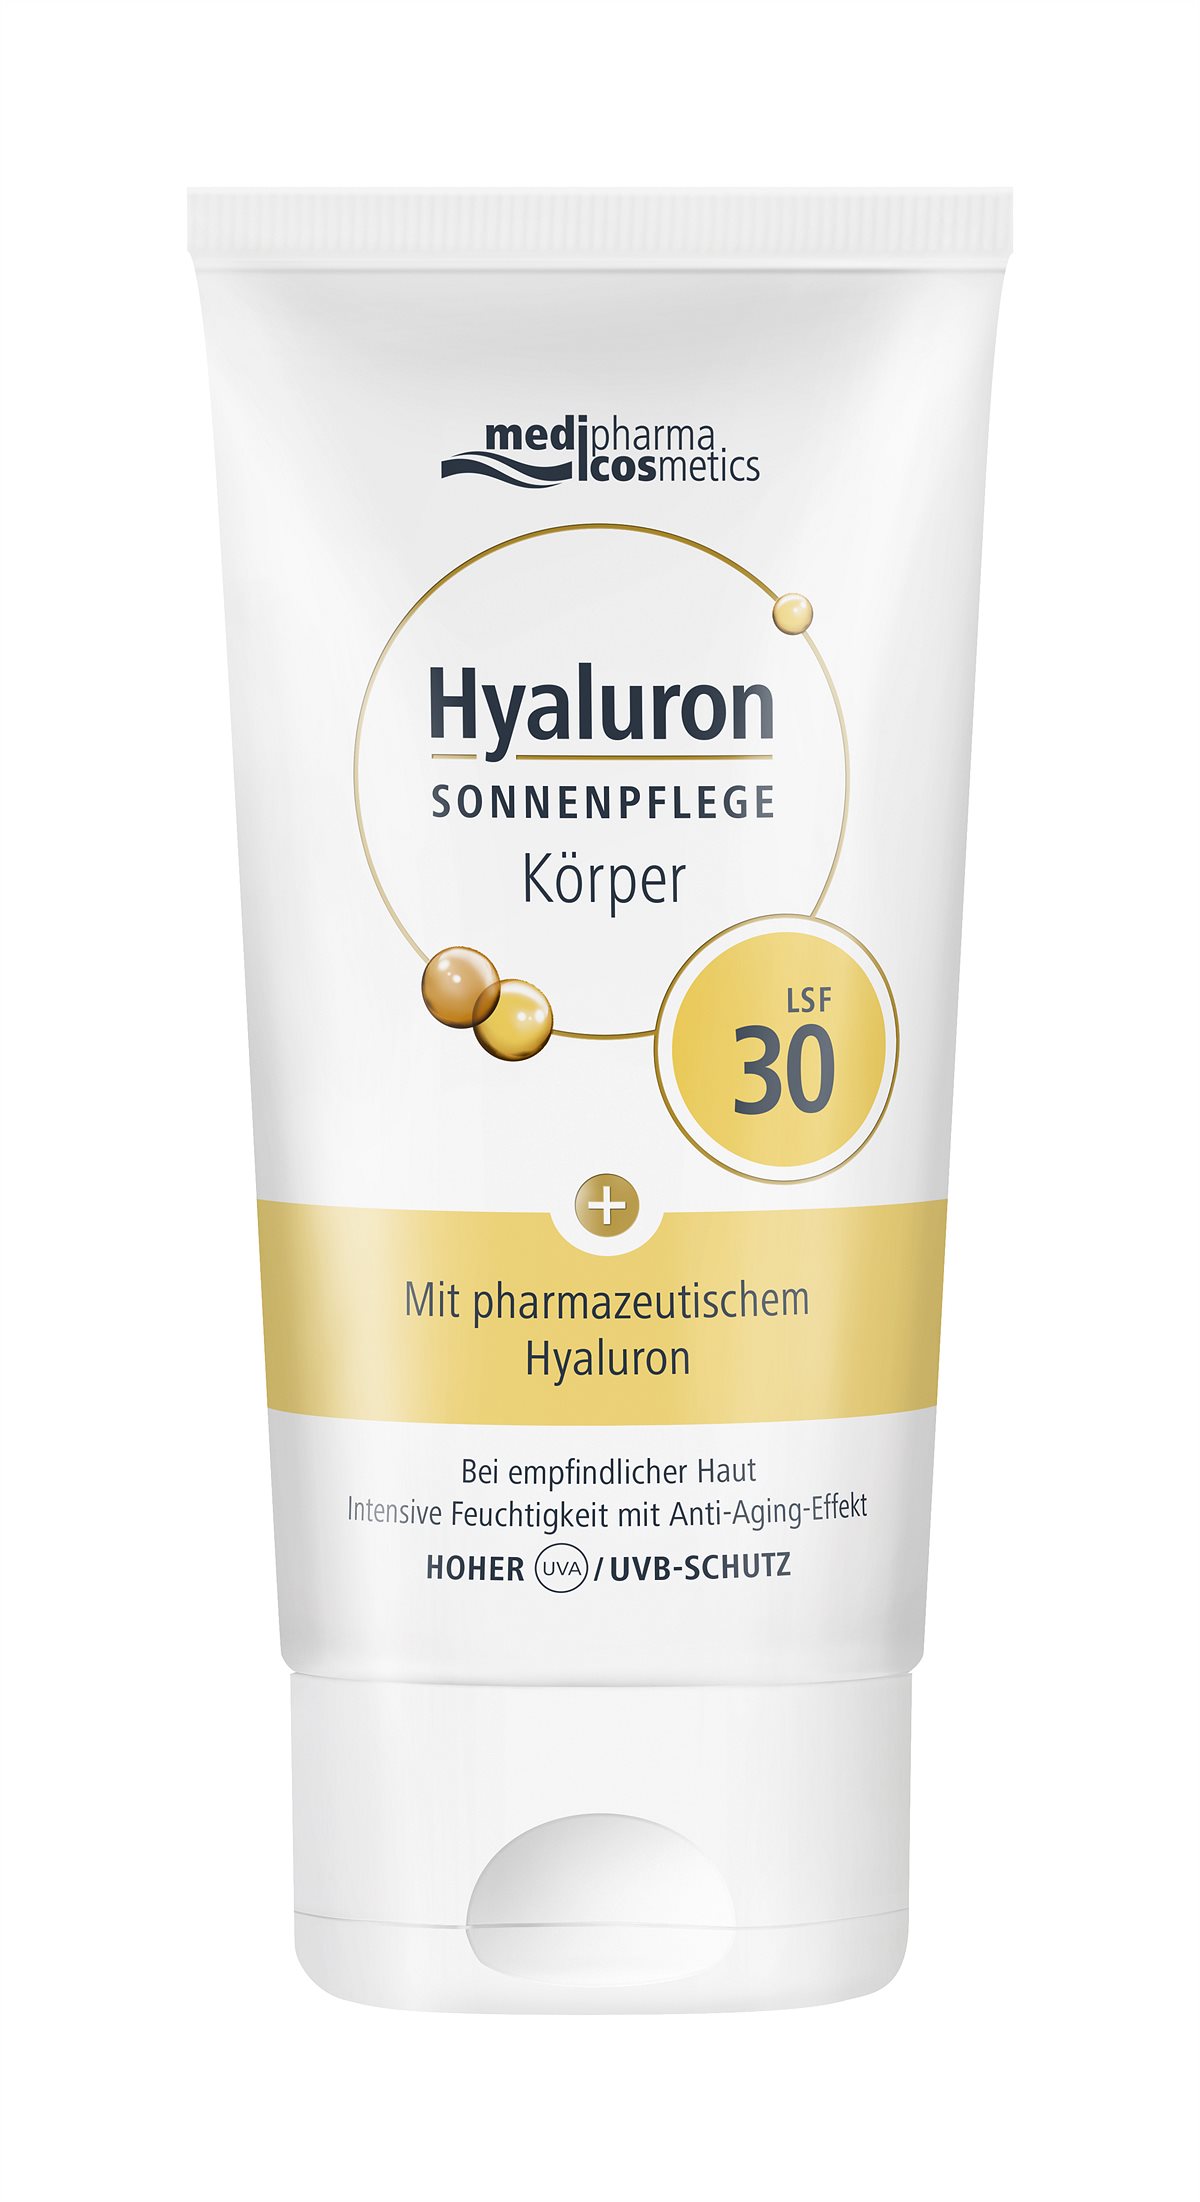 medipharma cosmetics Hyaluron SONNENPFLEGE Koerper LSF30